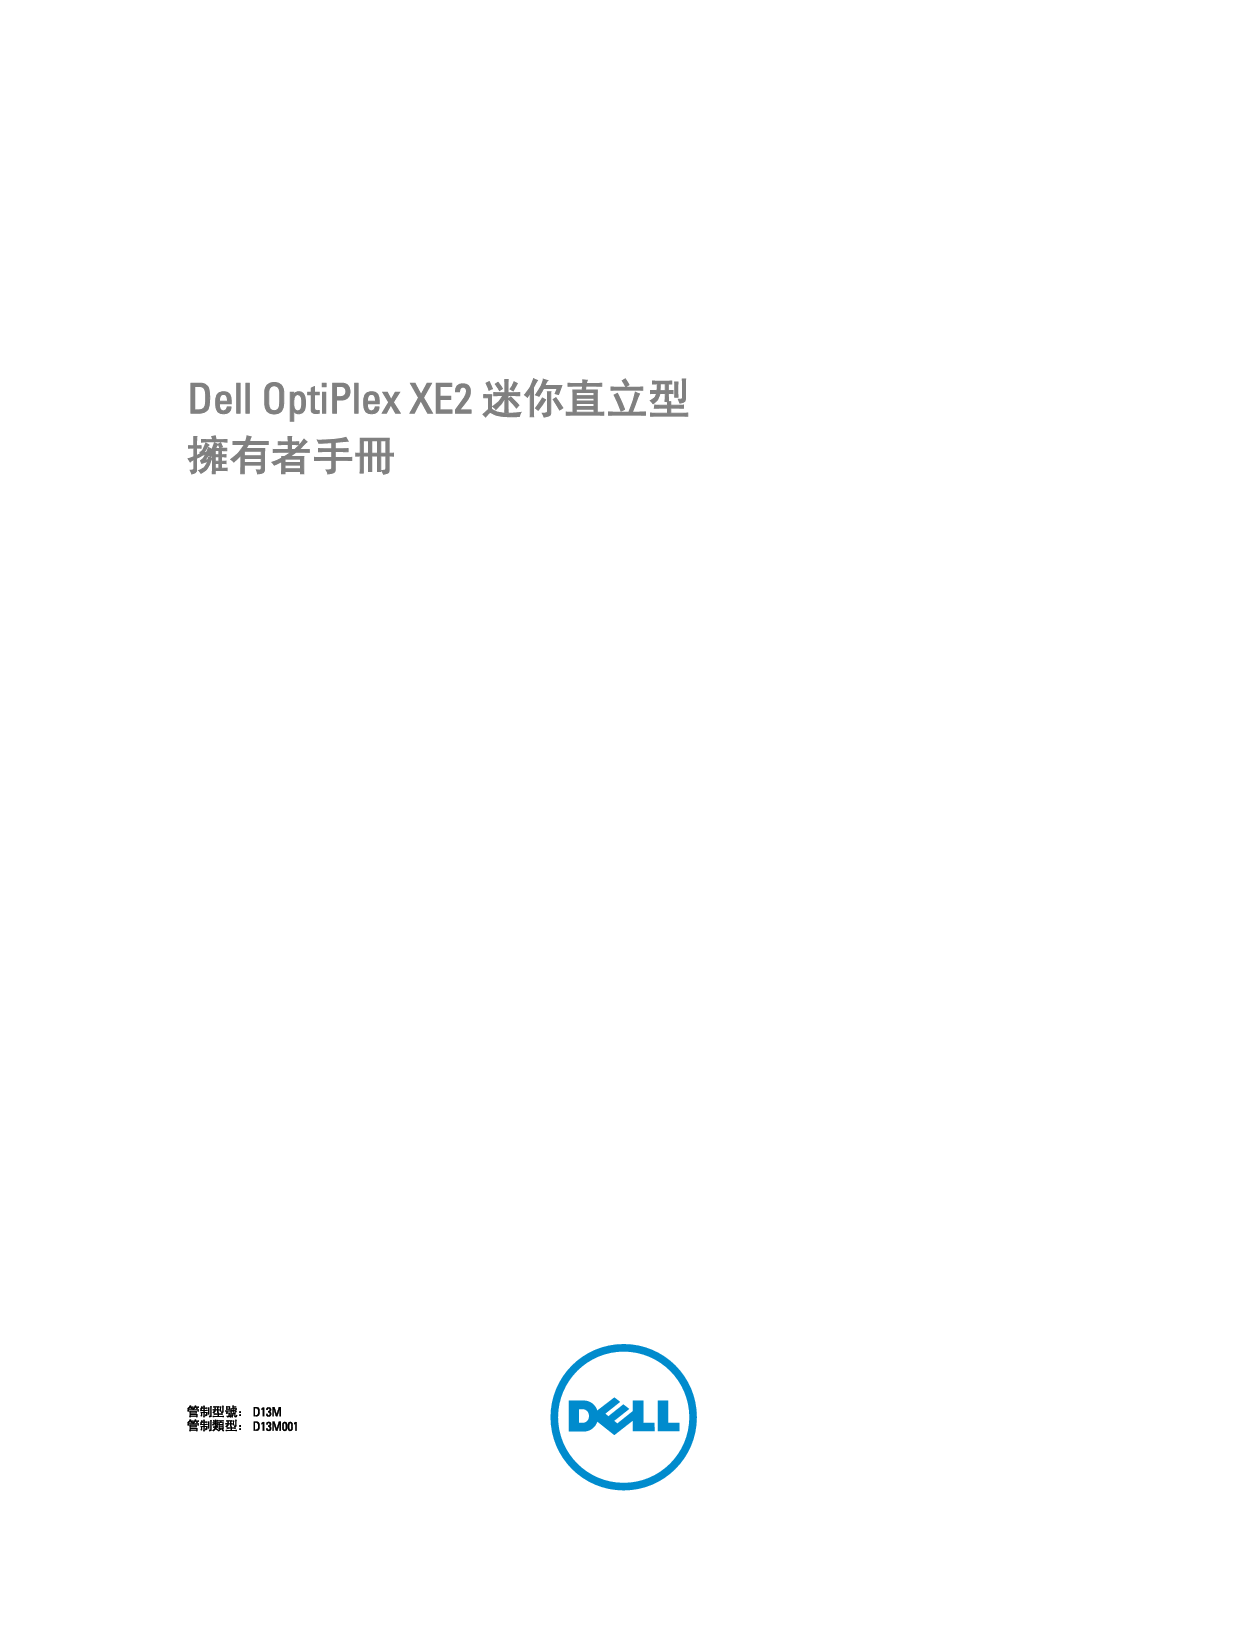 戴尔 Dell Optiplex XE2 小型塔式 繁体 用户手册 封面